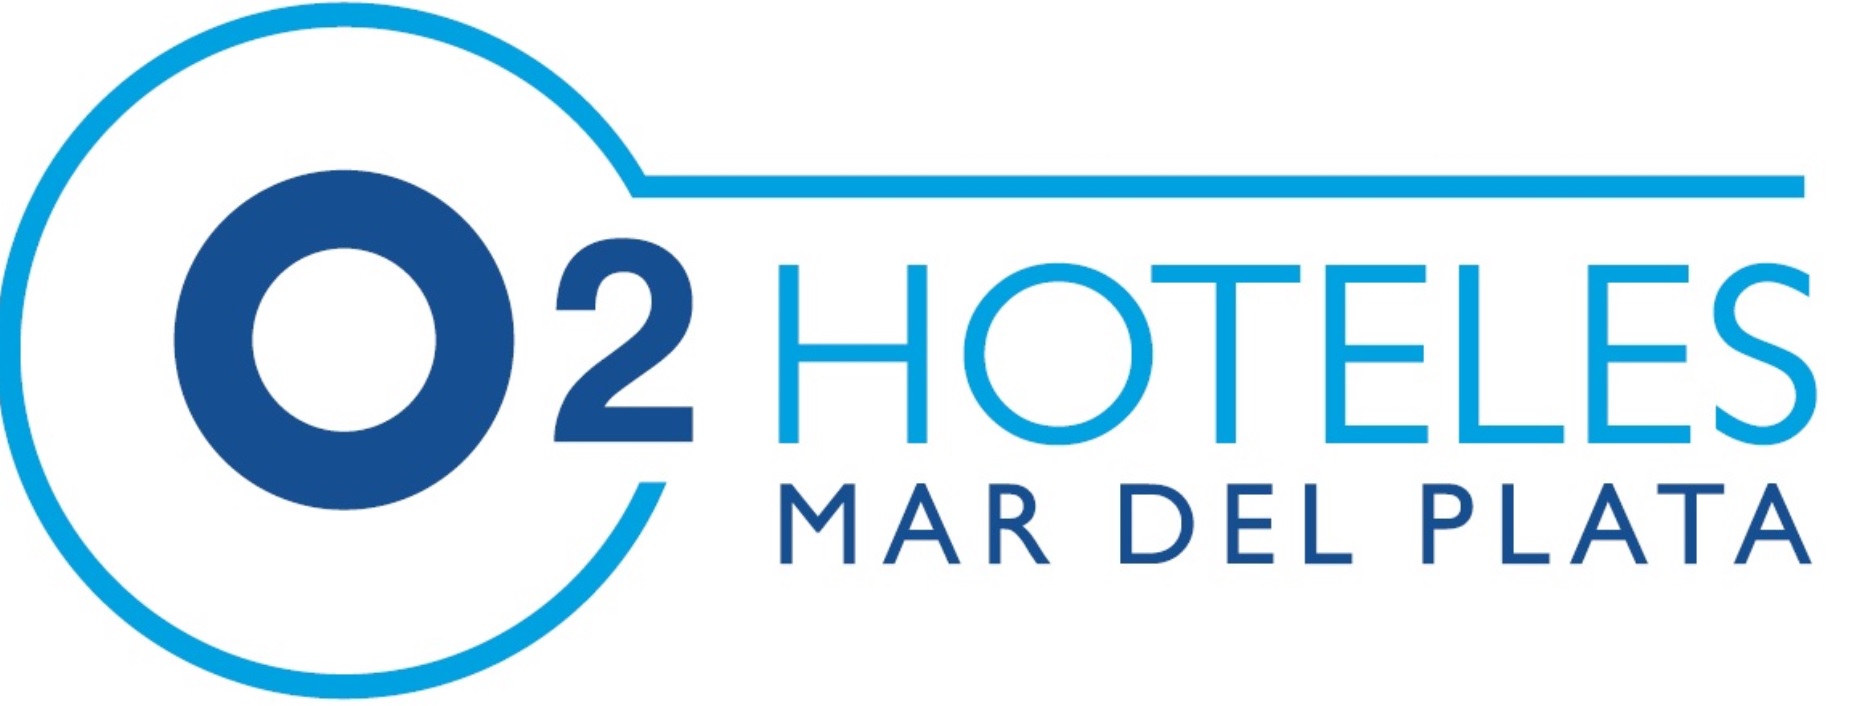 O2 Hoteles - Gerenciamiento Hotel 4 estrellas. O2 Hoteles Mar del Plata. Mar del Plata, Prov. De Bs As . Contrato a 4 años